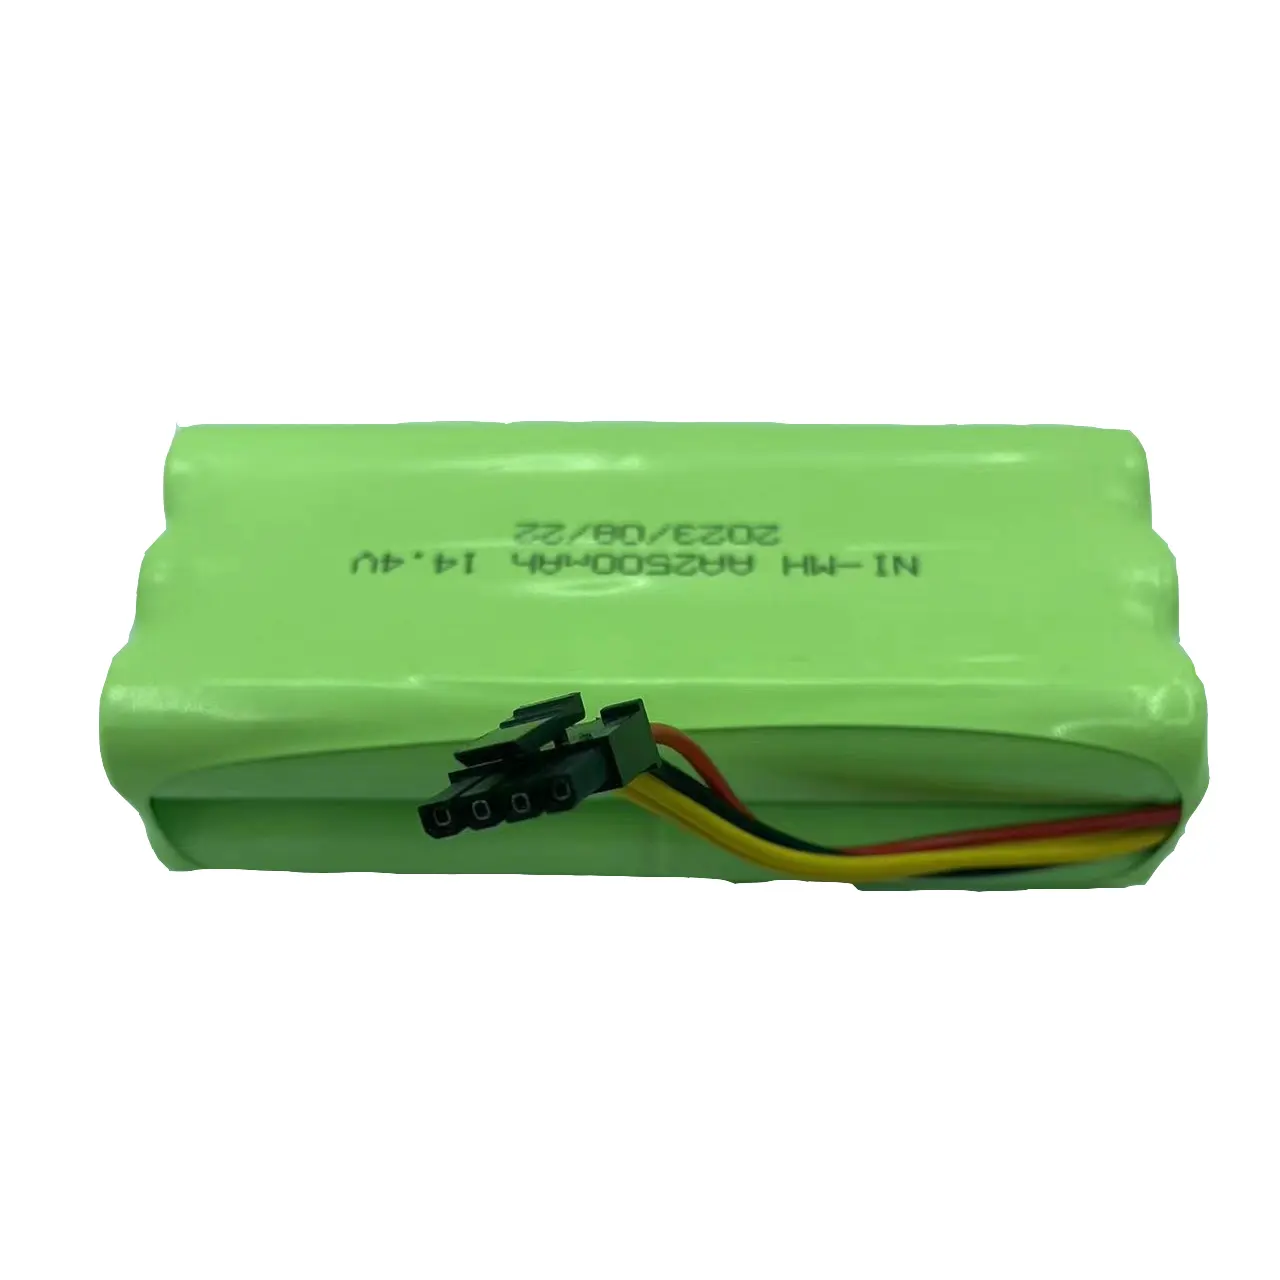 Direto da fábrica OEM personalizado ni-mh bateria AA Ni-MH bateria 14.4V 2500mAh bateria recarregável para airsoft arma